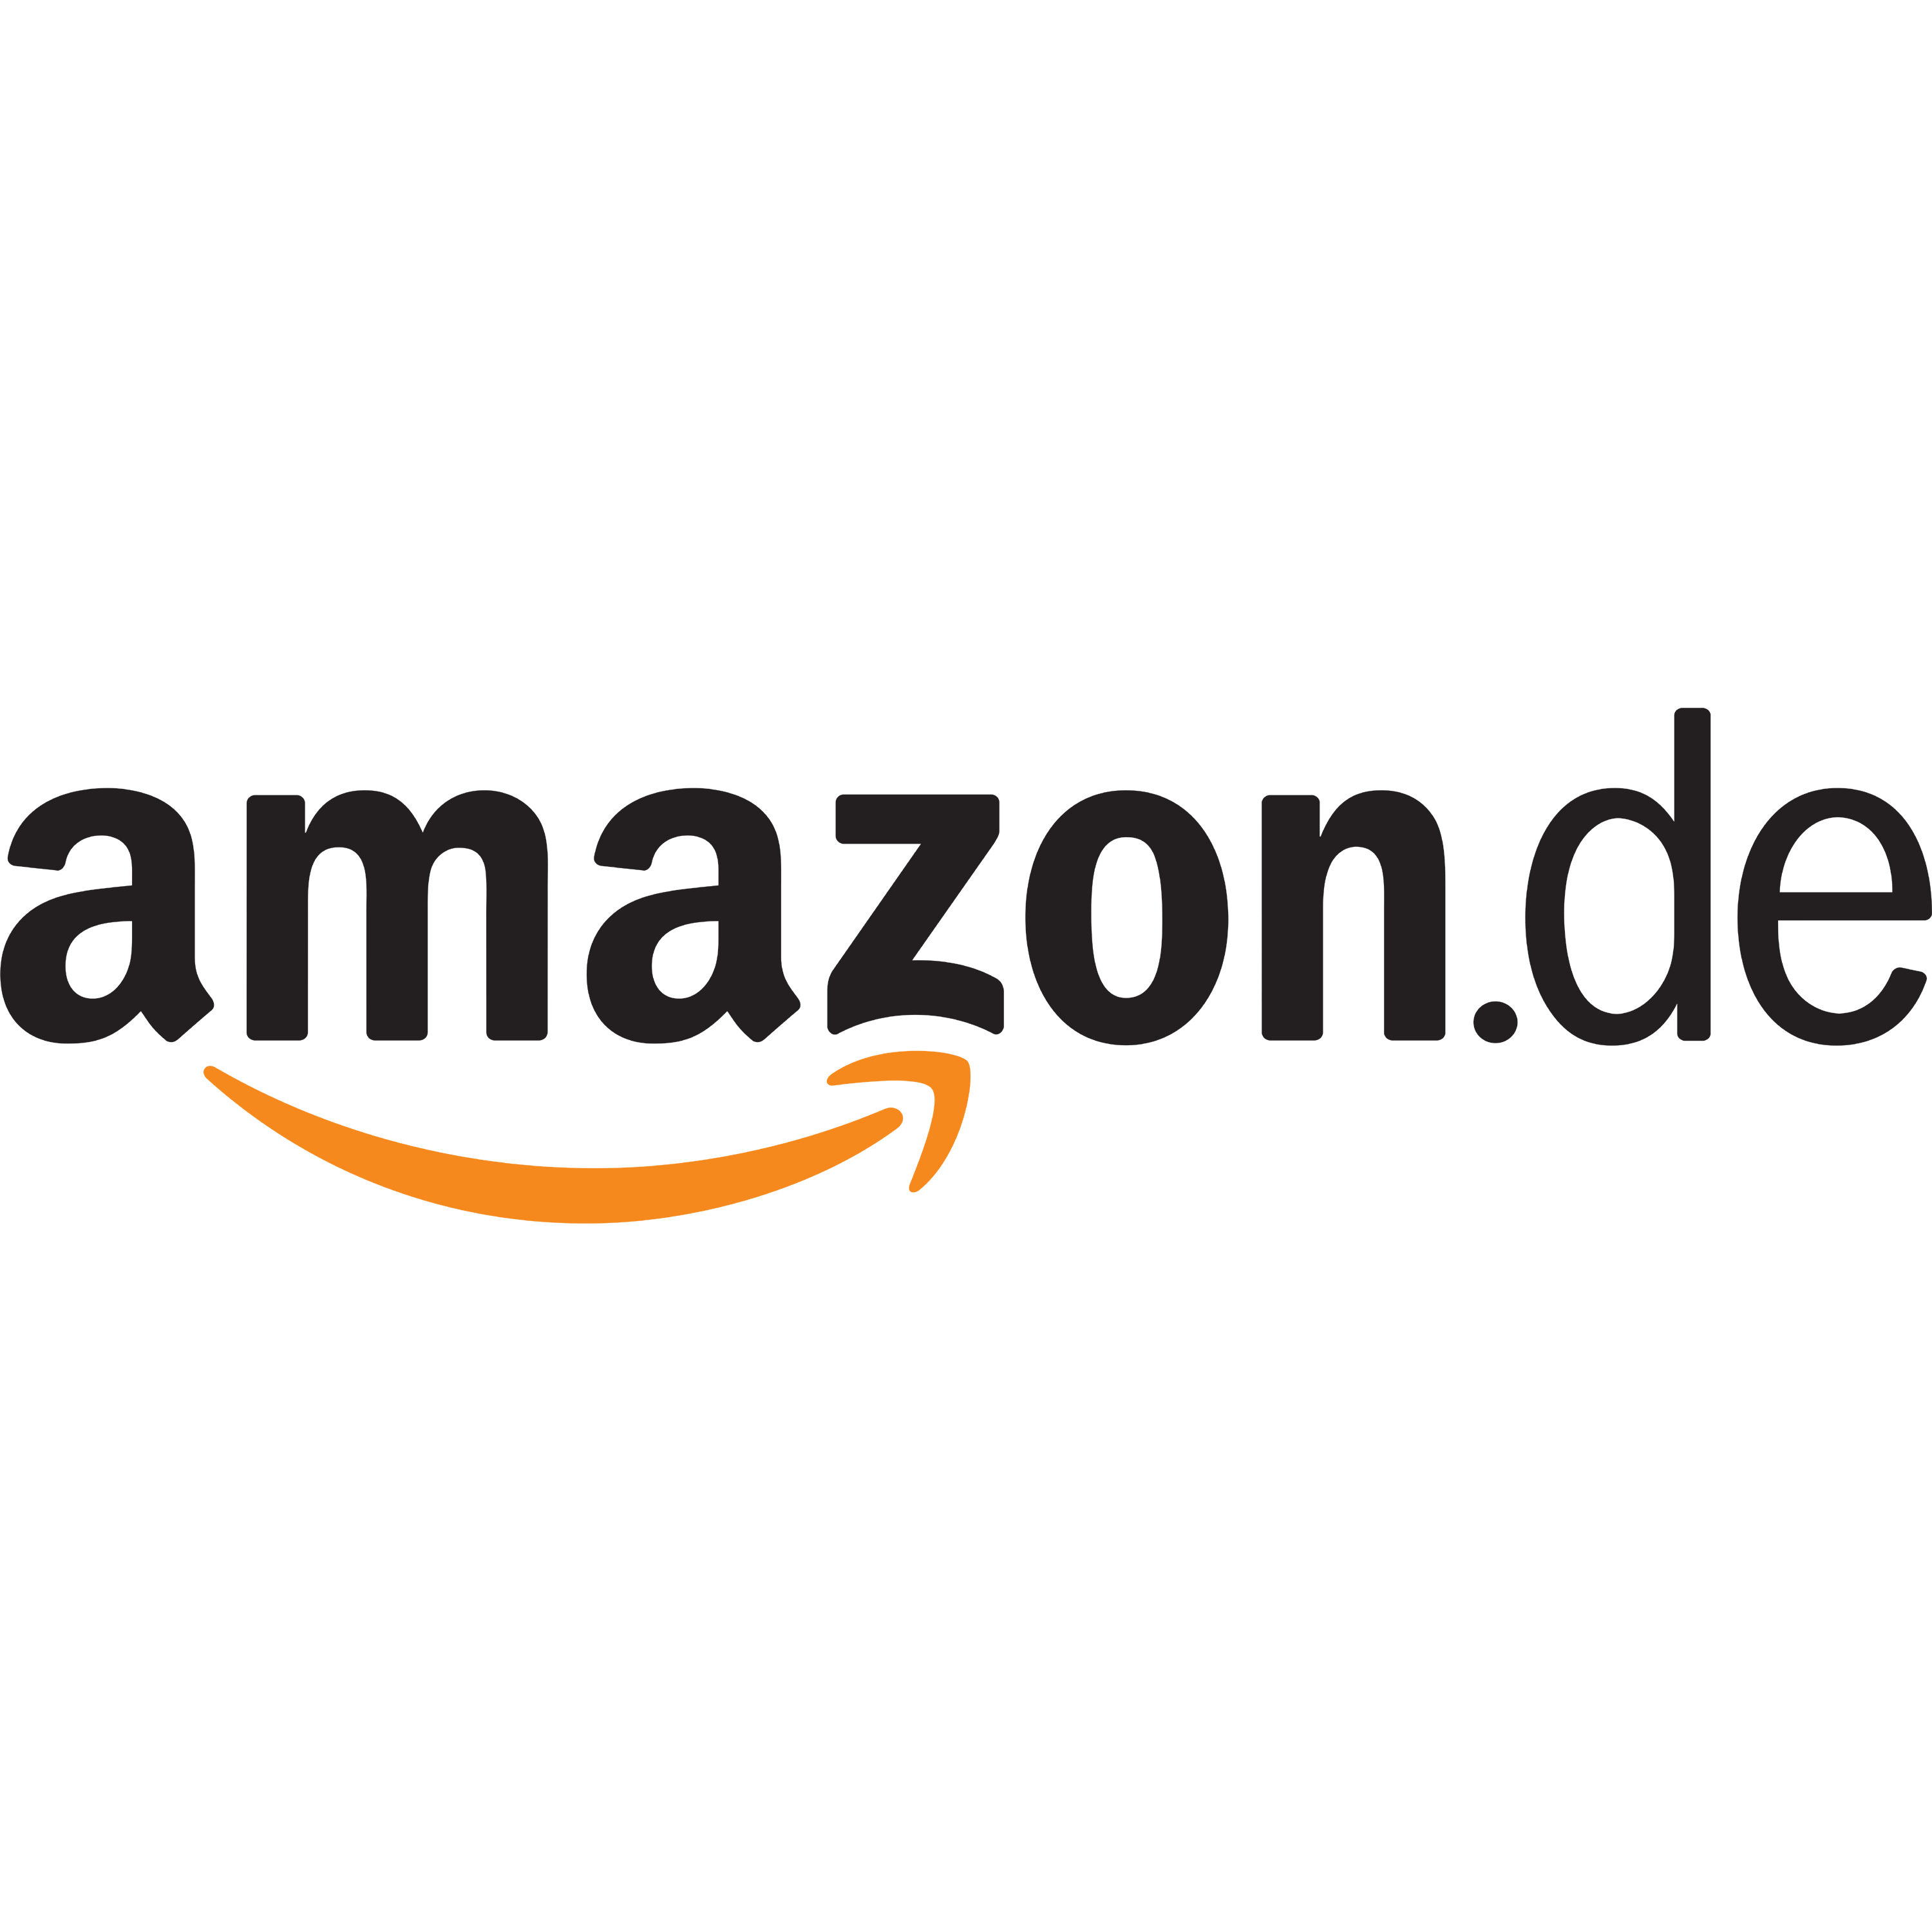 Amazon.de Logo Transparent Image